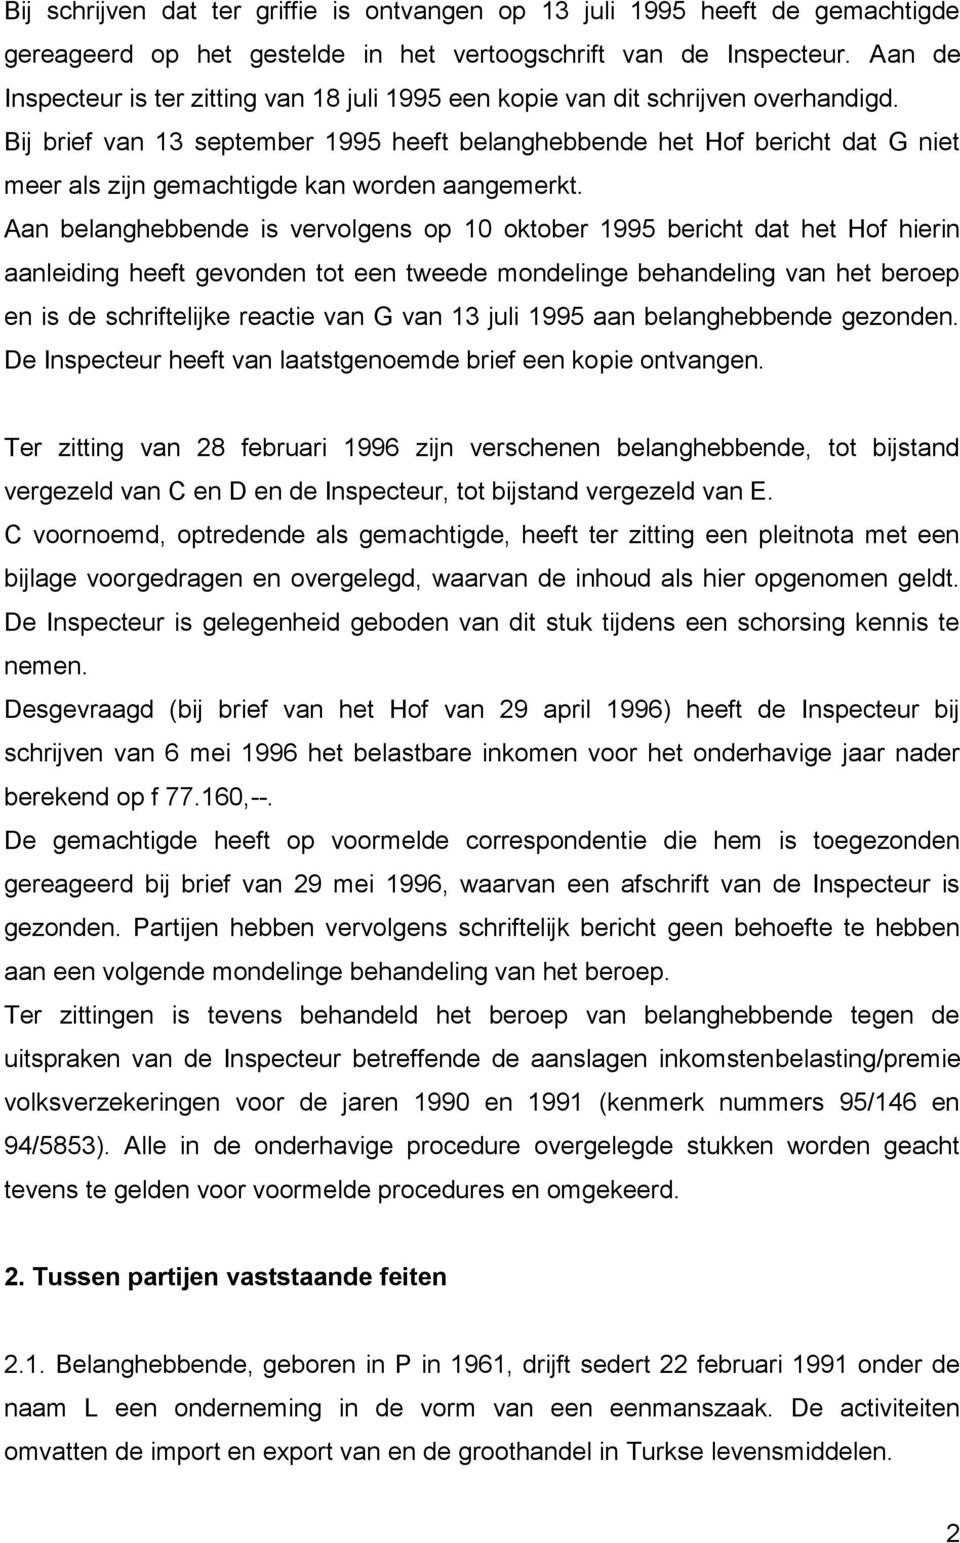 Bij brief van 13 september 1995 heeft belanghebbende het Hof bericht dat G niet meer als zijn gemachtigde kan worden aangemerkt.